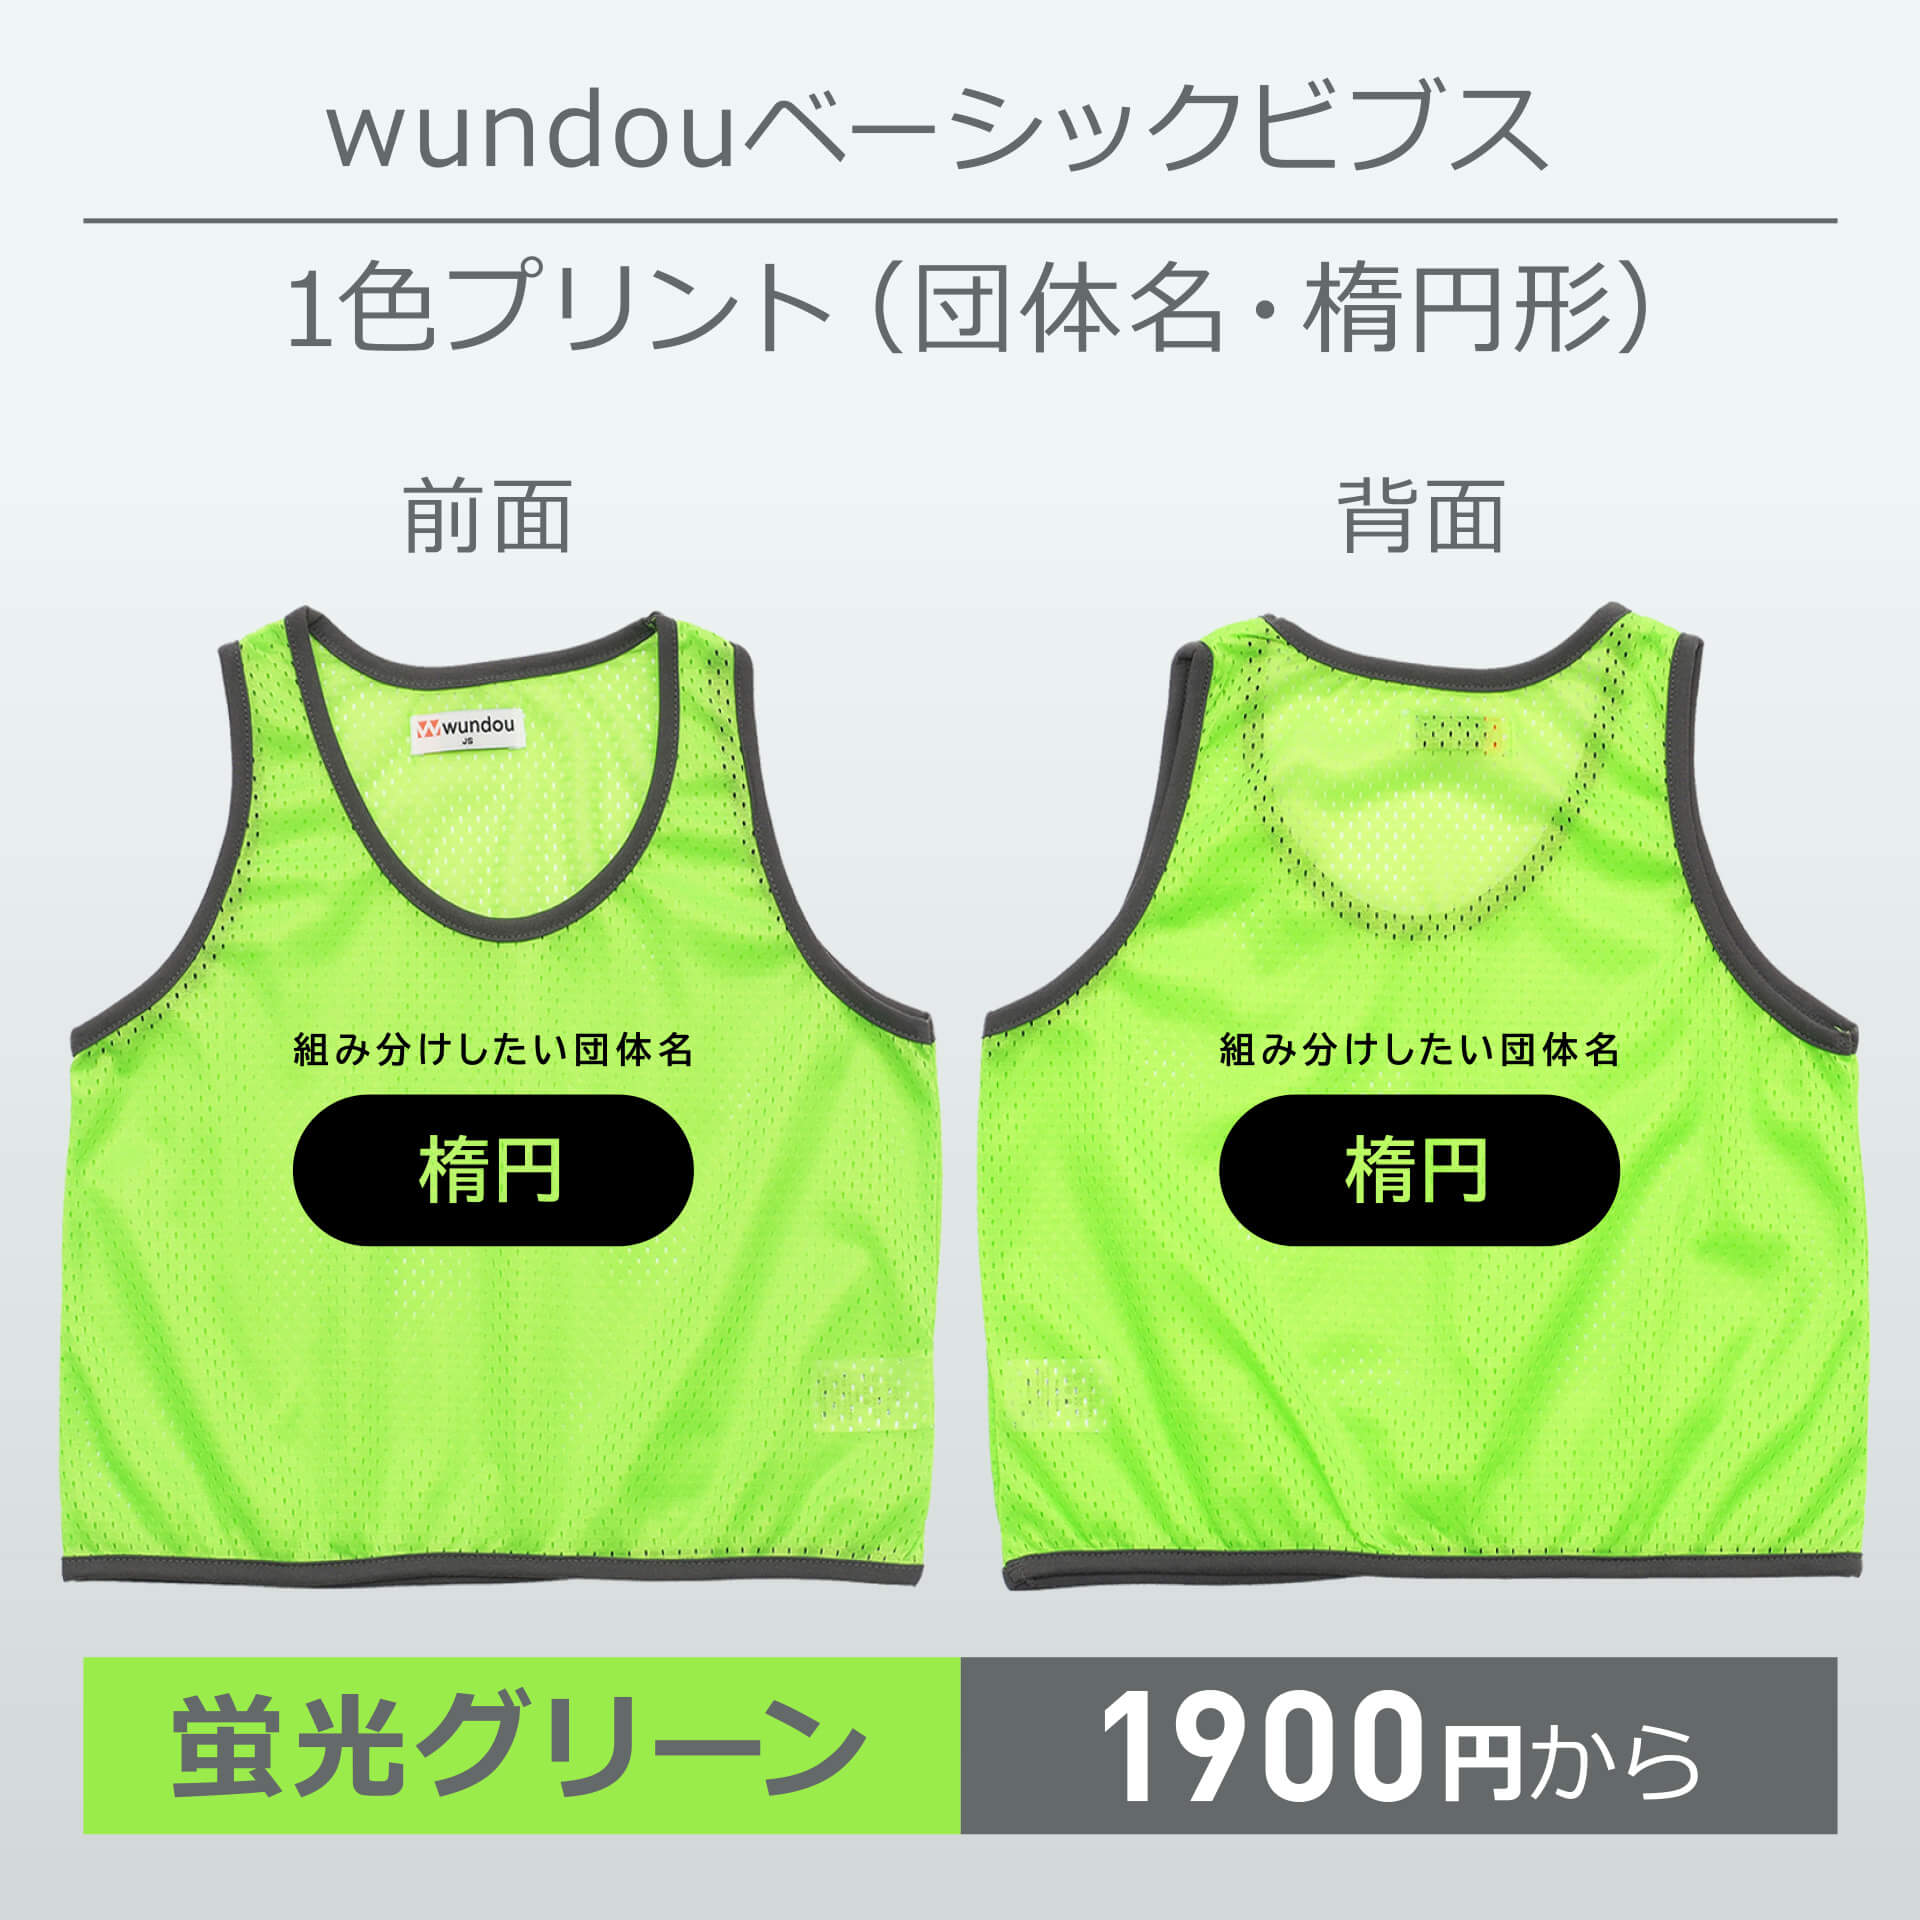 wundou・ベーシックビブス・1色プリント(団体名・楕円形)・蛍光グリーン